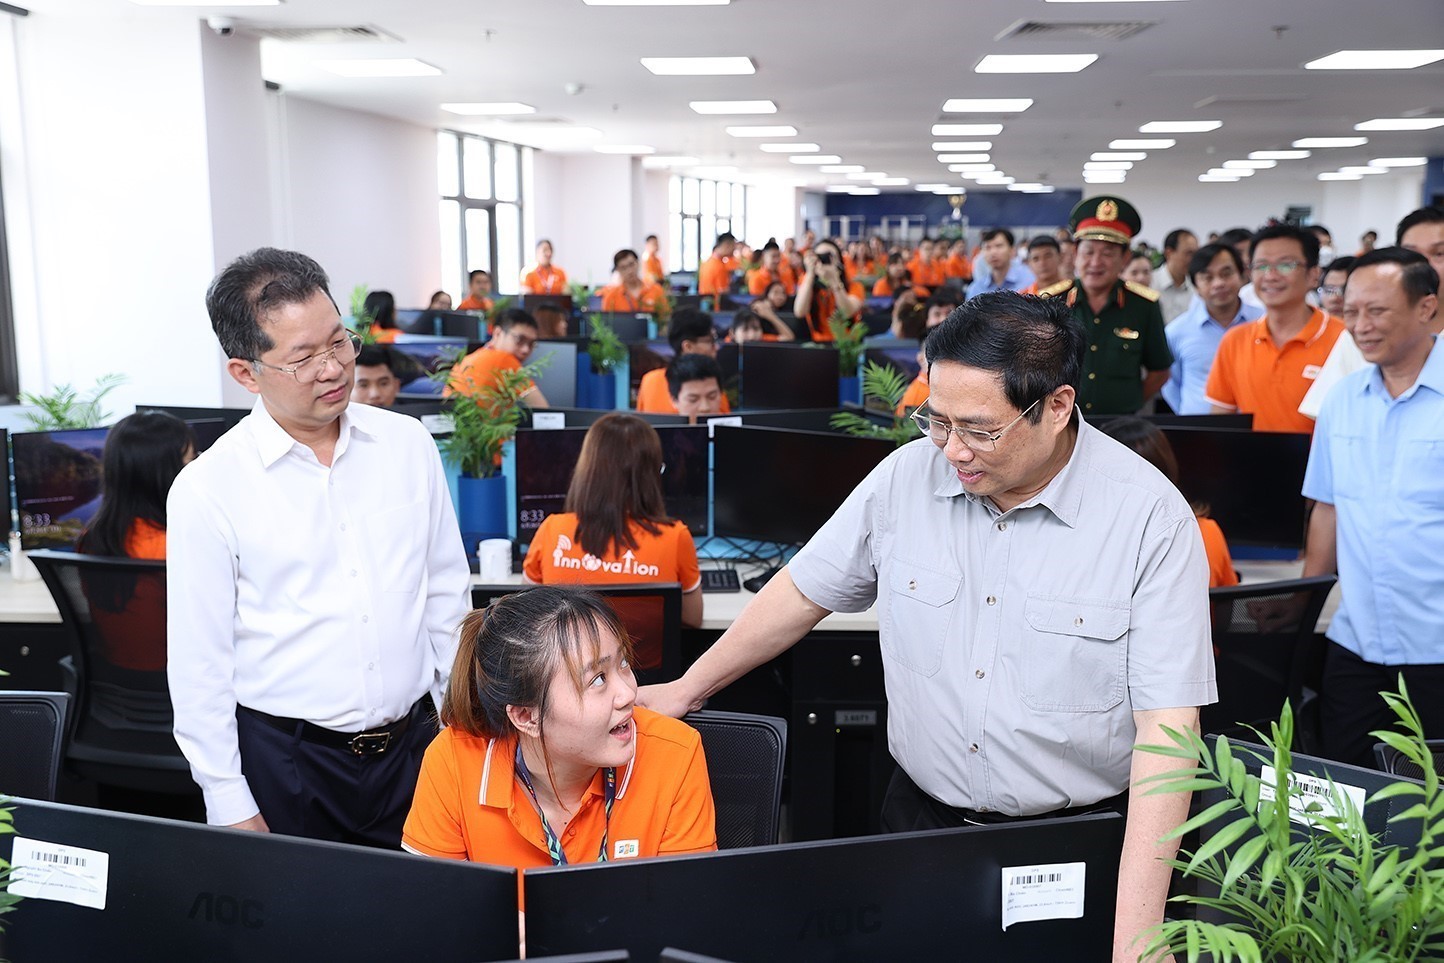 Ngày 26/6/2022, Thủ tướng Phạm Minh Chính đến thăm, khảo sát khu đô thị giáo dục - công nghệ FPT City, gặp gỡ cán bộ, giáo viên tại Trường Đại học FPT Đà Nẵng và các lập trình viên tại F-Complex. Ảnh: Dương Giang/TTXVN.